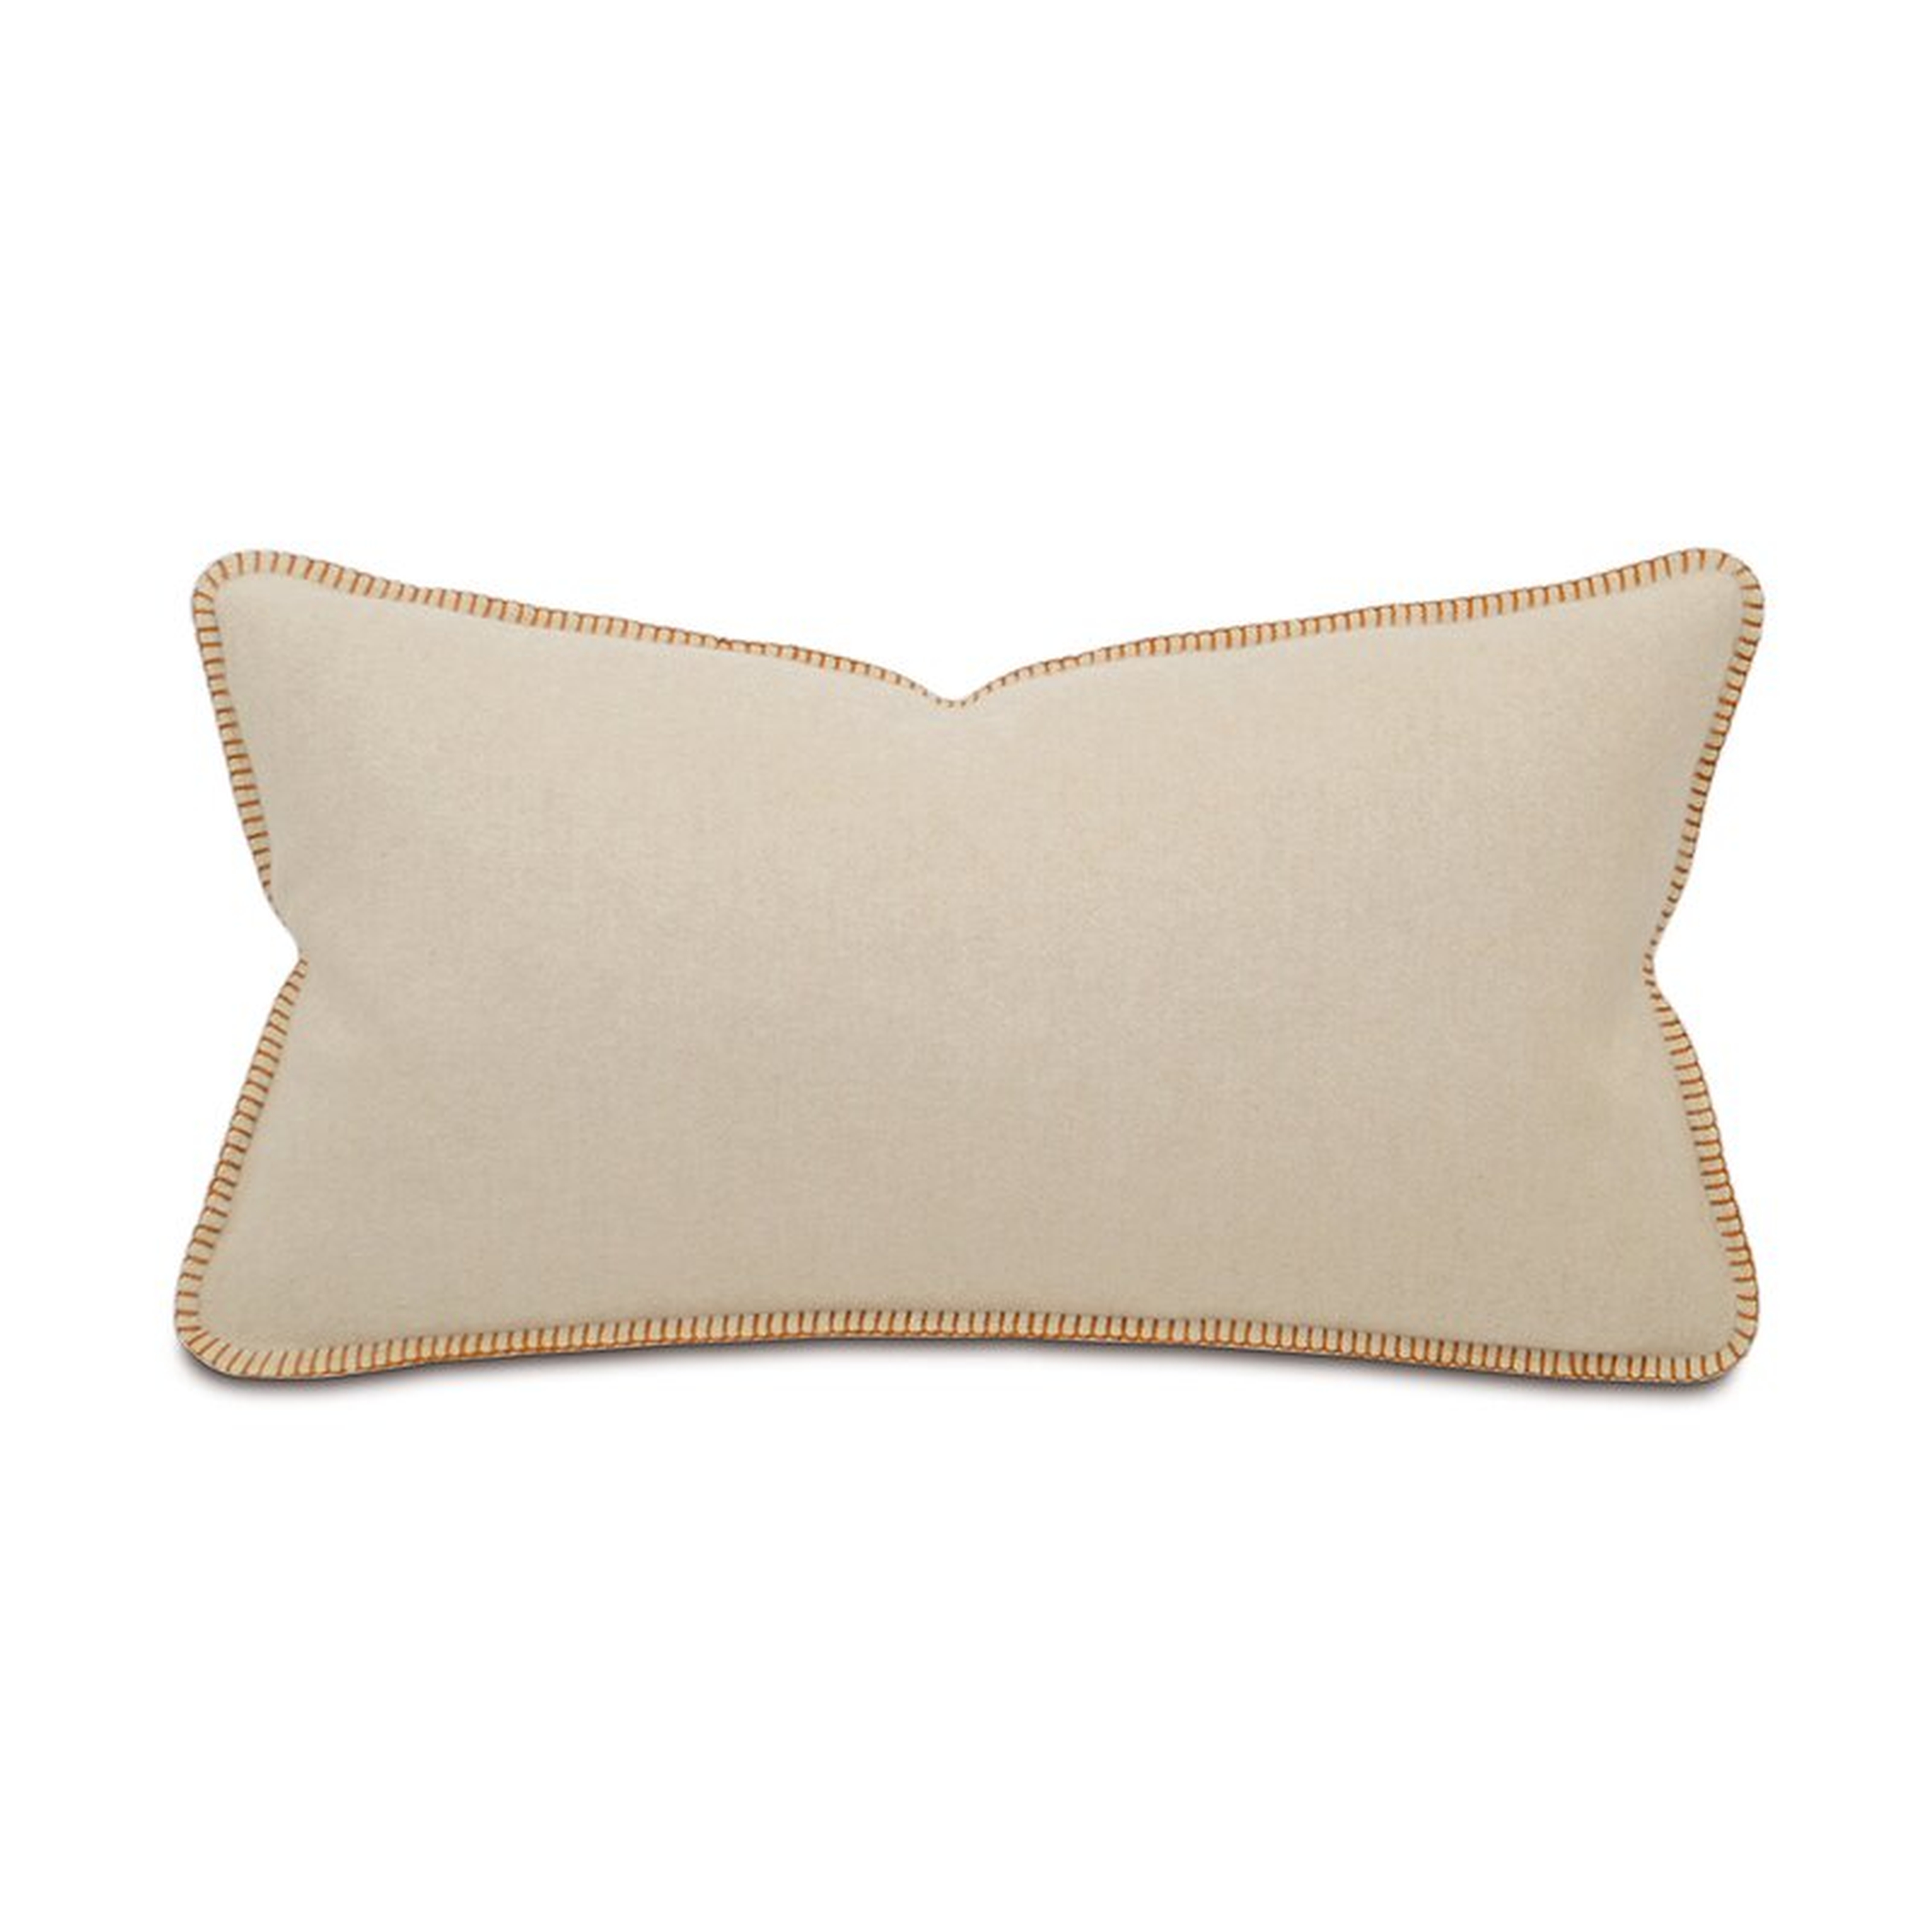 Eastern Accents Brayden Lumbar Pillow Cover & Insert - Perigold